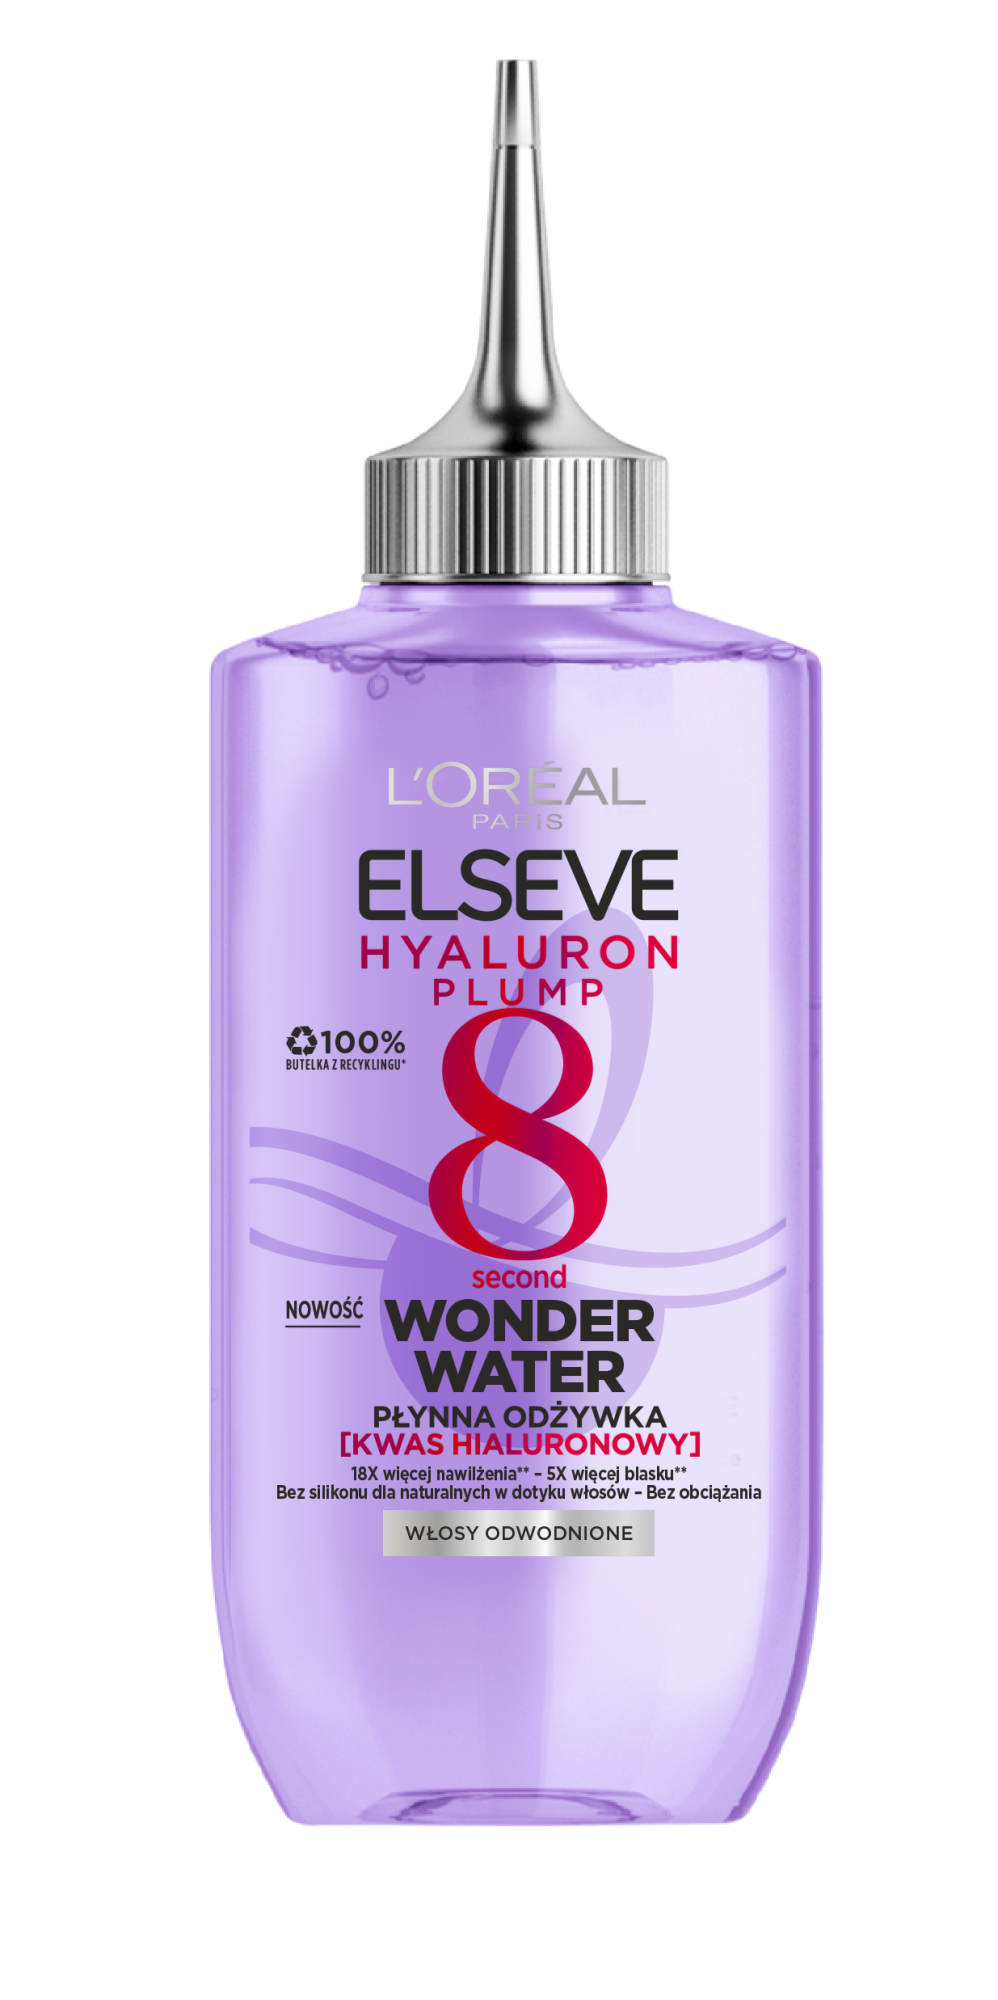 L'Oréal Paris Elseve Hyaluron Plump Wonder Water жидкий кондиционер для волос, 200 мл elseve hyaluron plump кондиционер для волос 200 ml